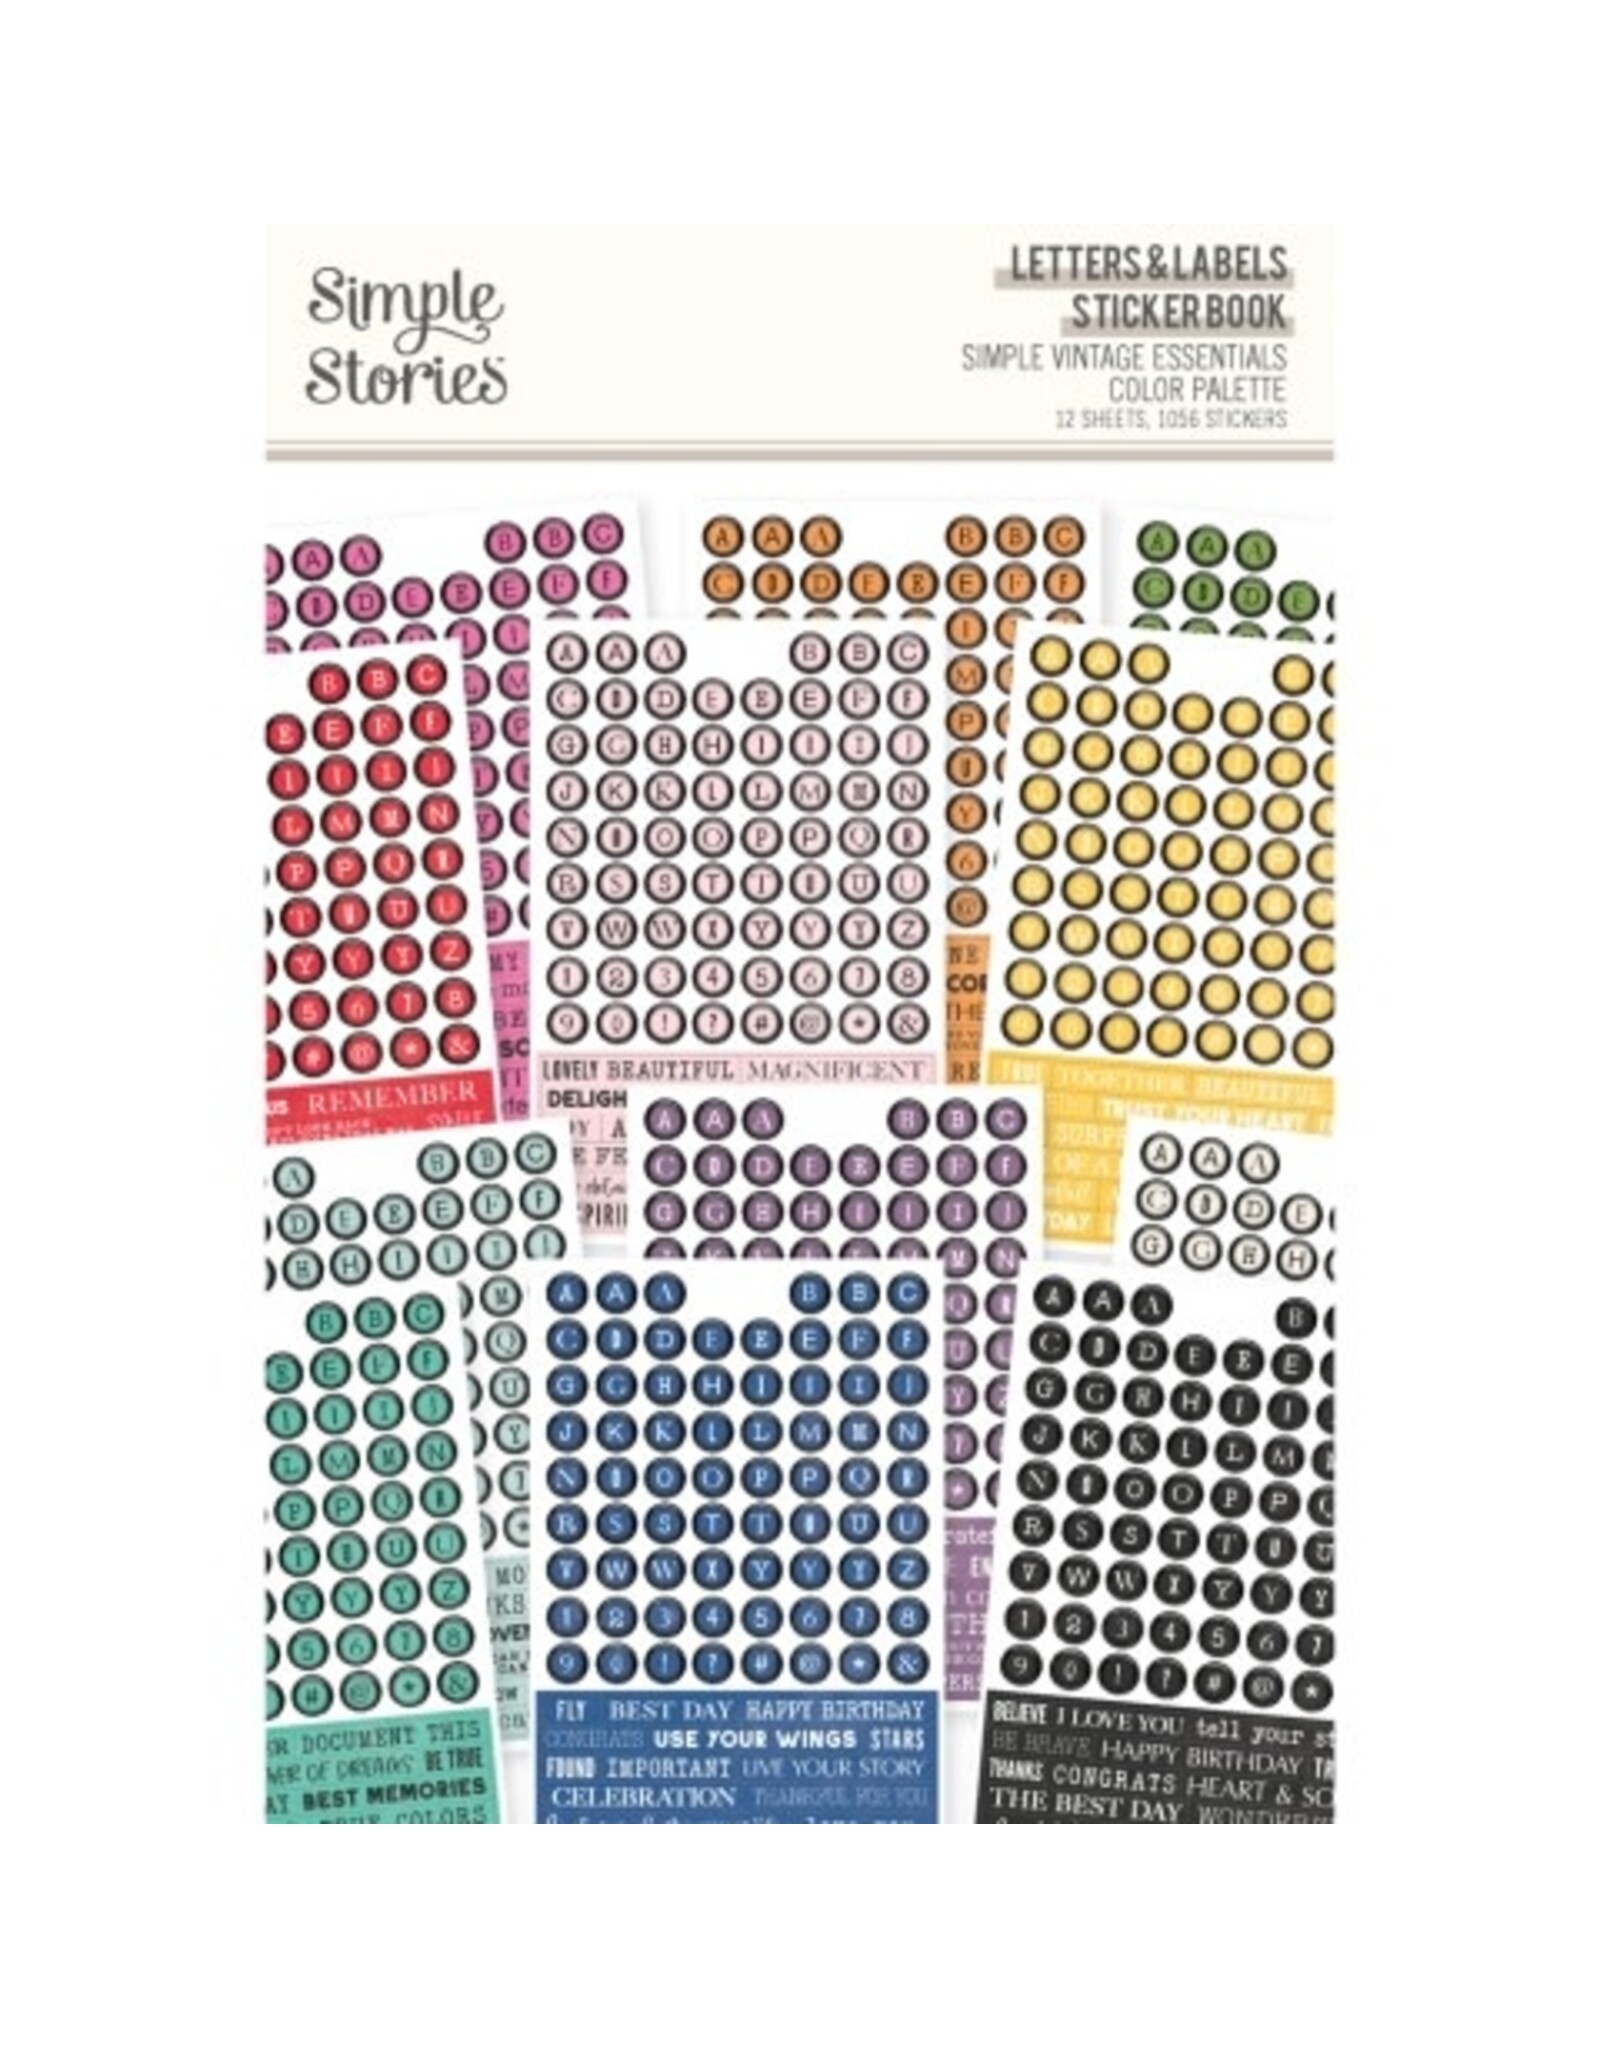 Simple Stories Simple Vintage Essentials Color Palette Letters & Labels Sticker Book